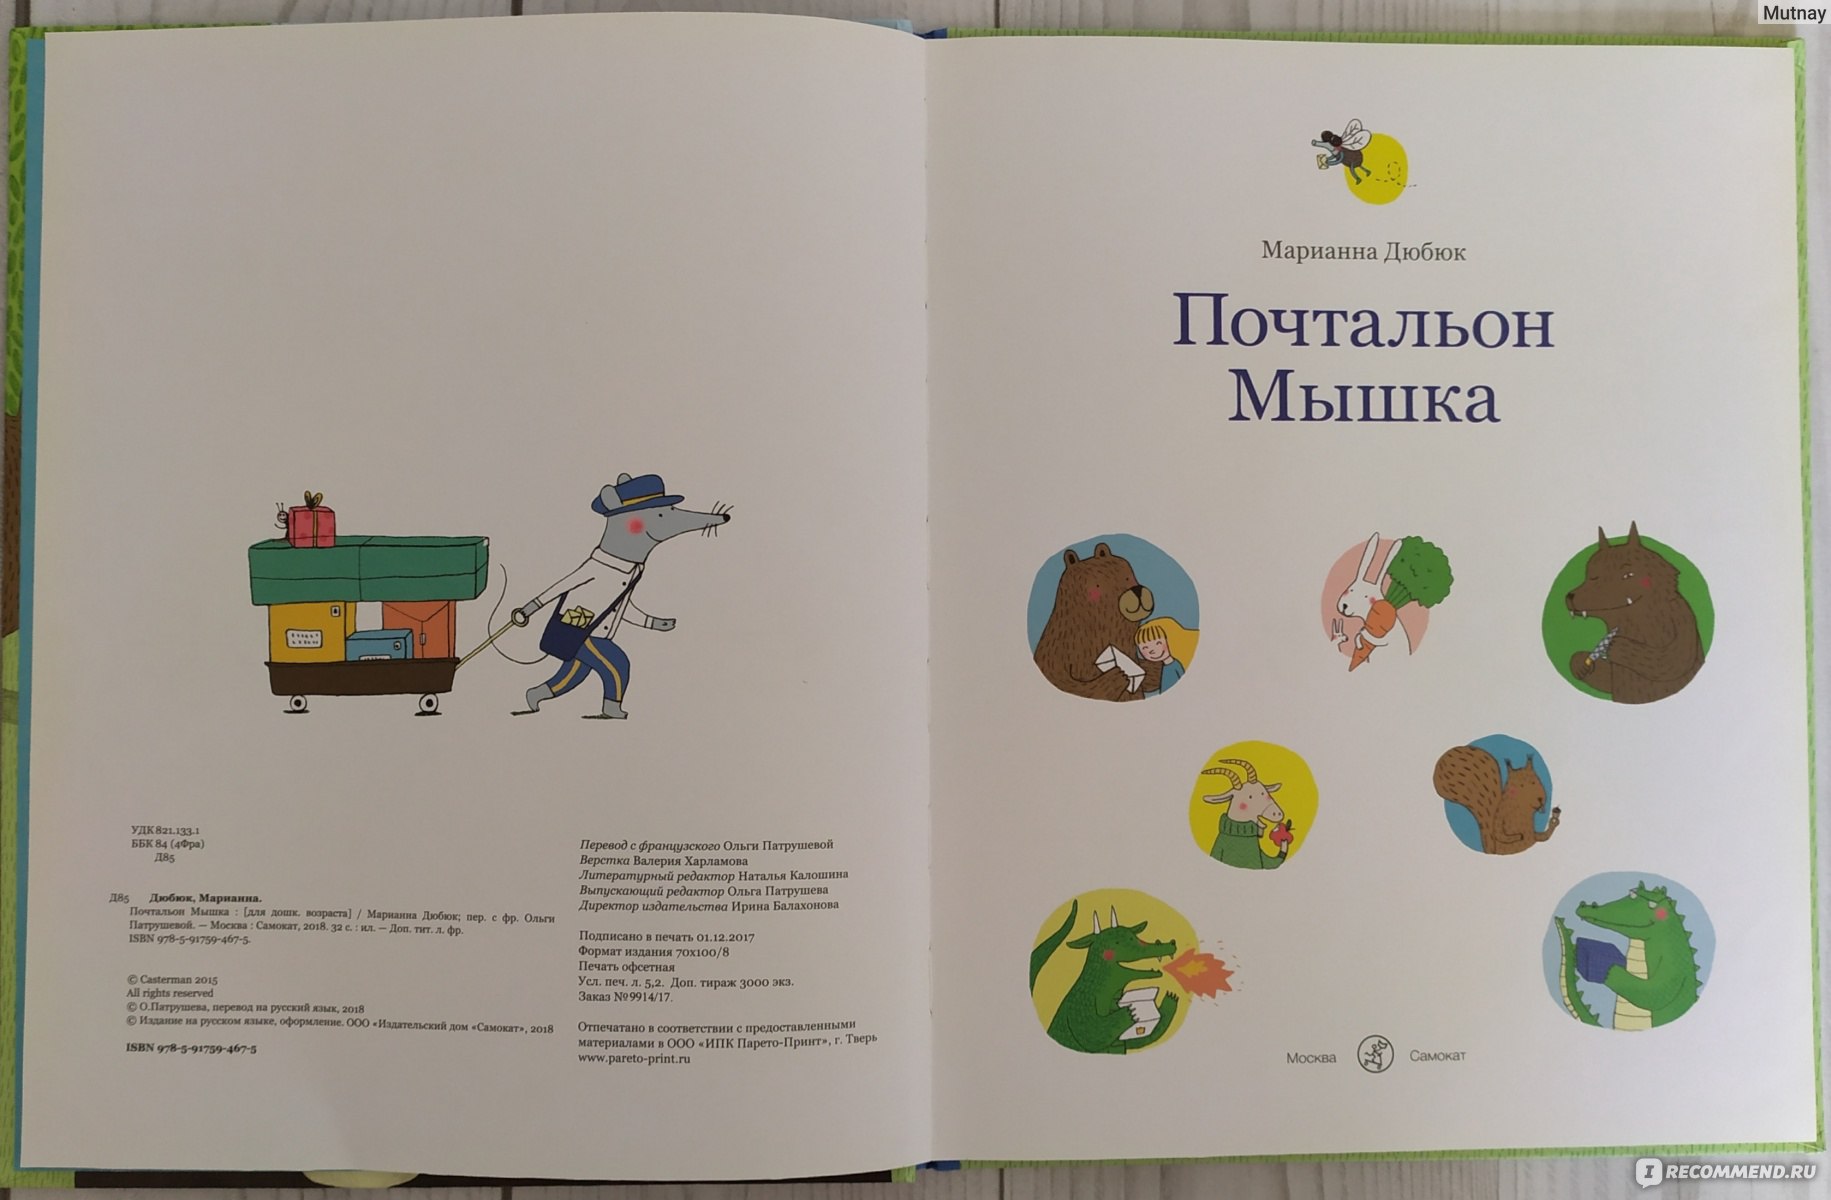 Почтальон Мышка. Марианна Дюбюк - «Красивая книга с яркими иллюстрациями» |  отзывы